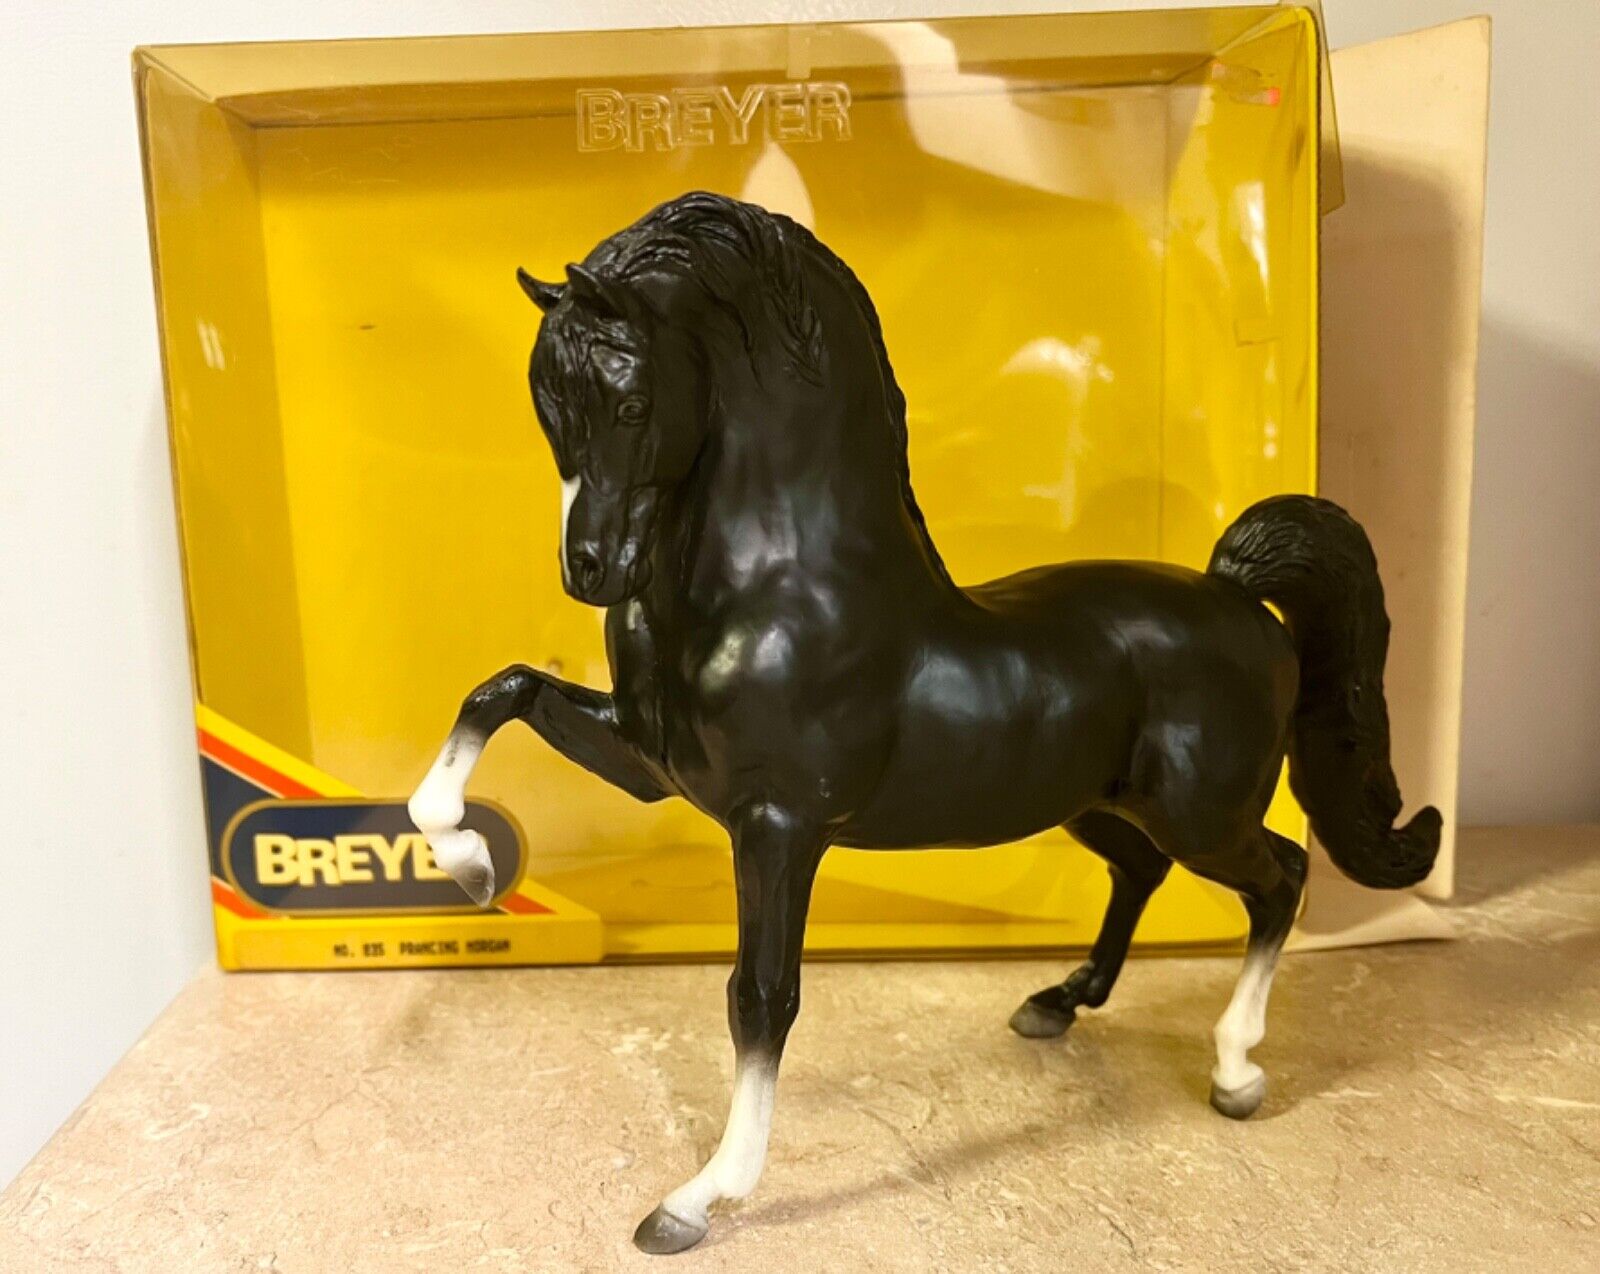  Breyer horse vintage #835 Prancing Morgan 1991-1992 with original box